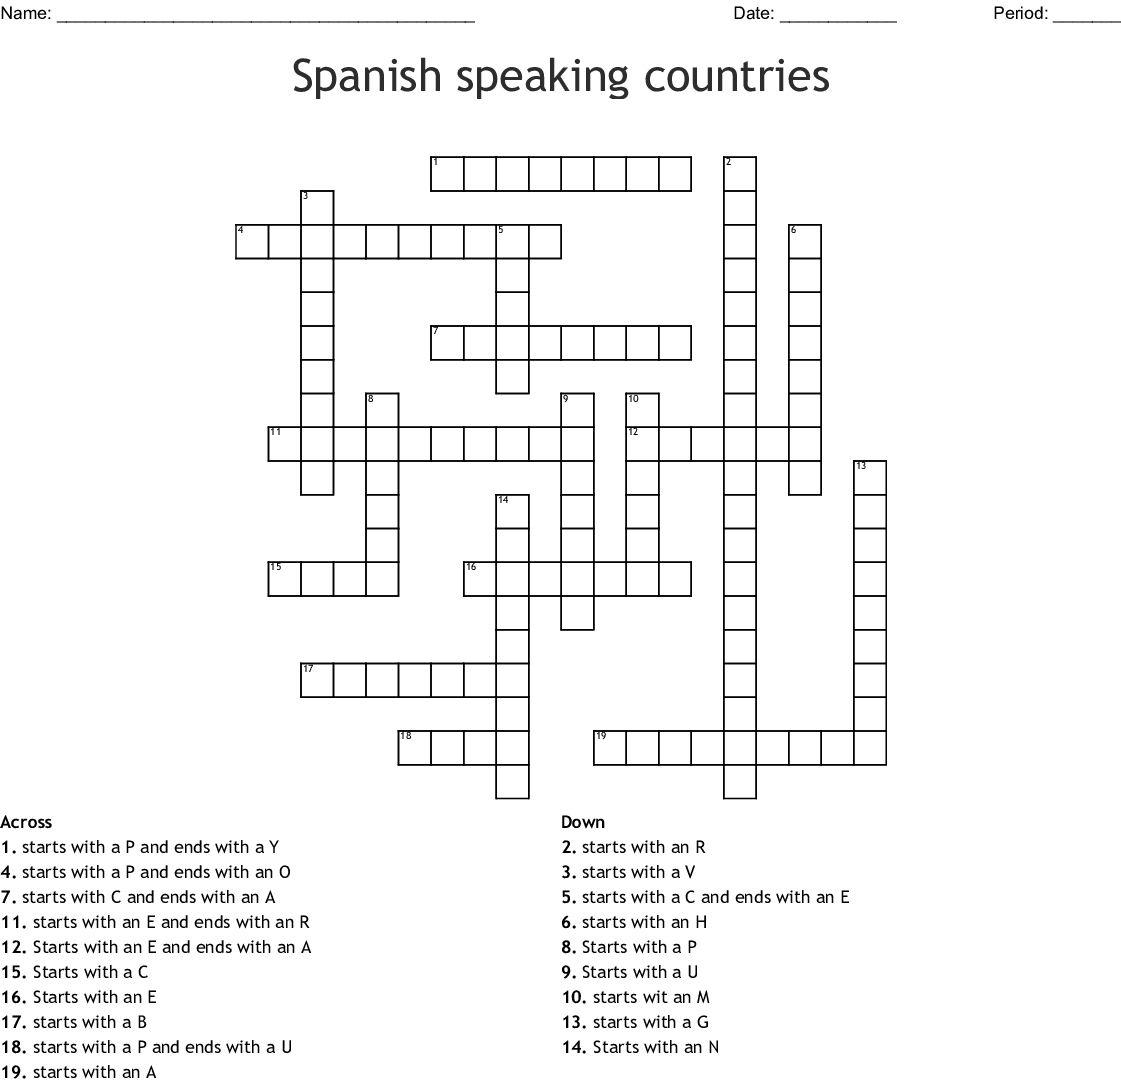 Spanish Speaking Countries Crossword Word Db excel